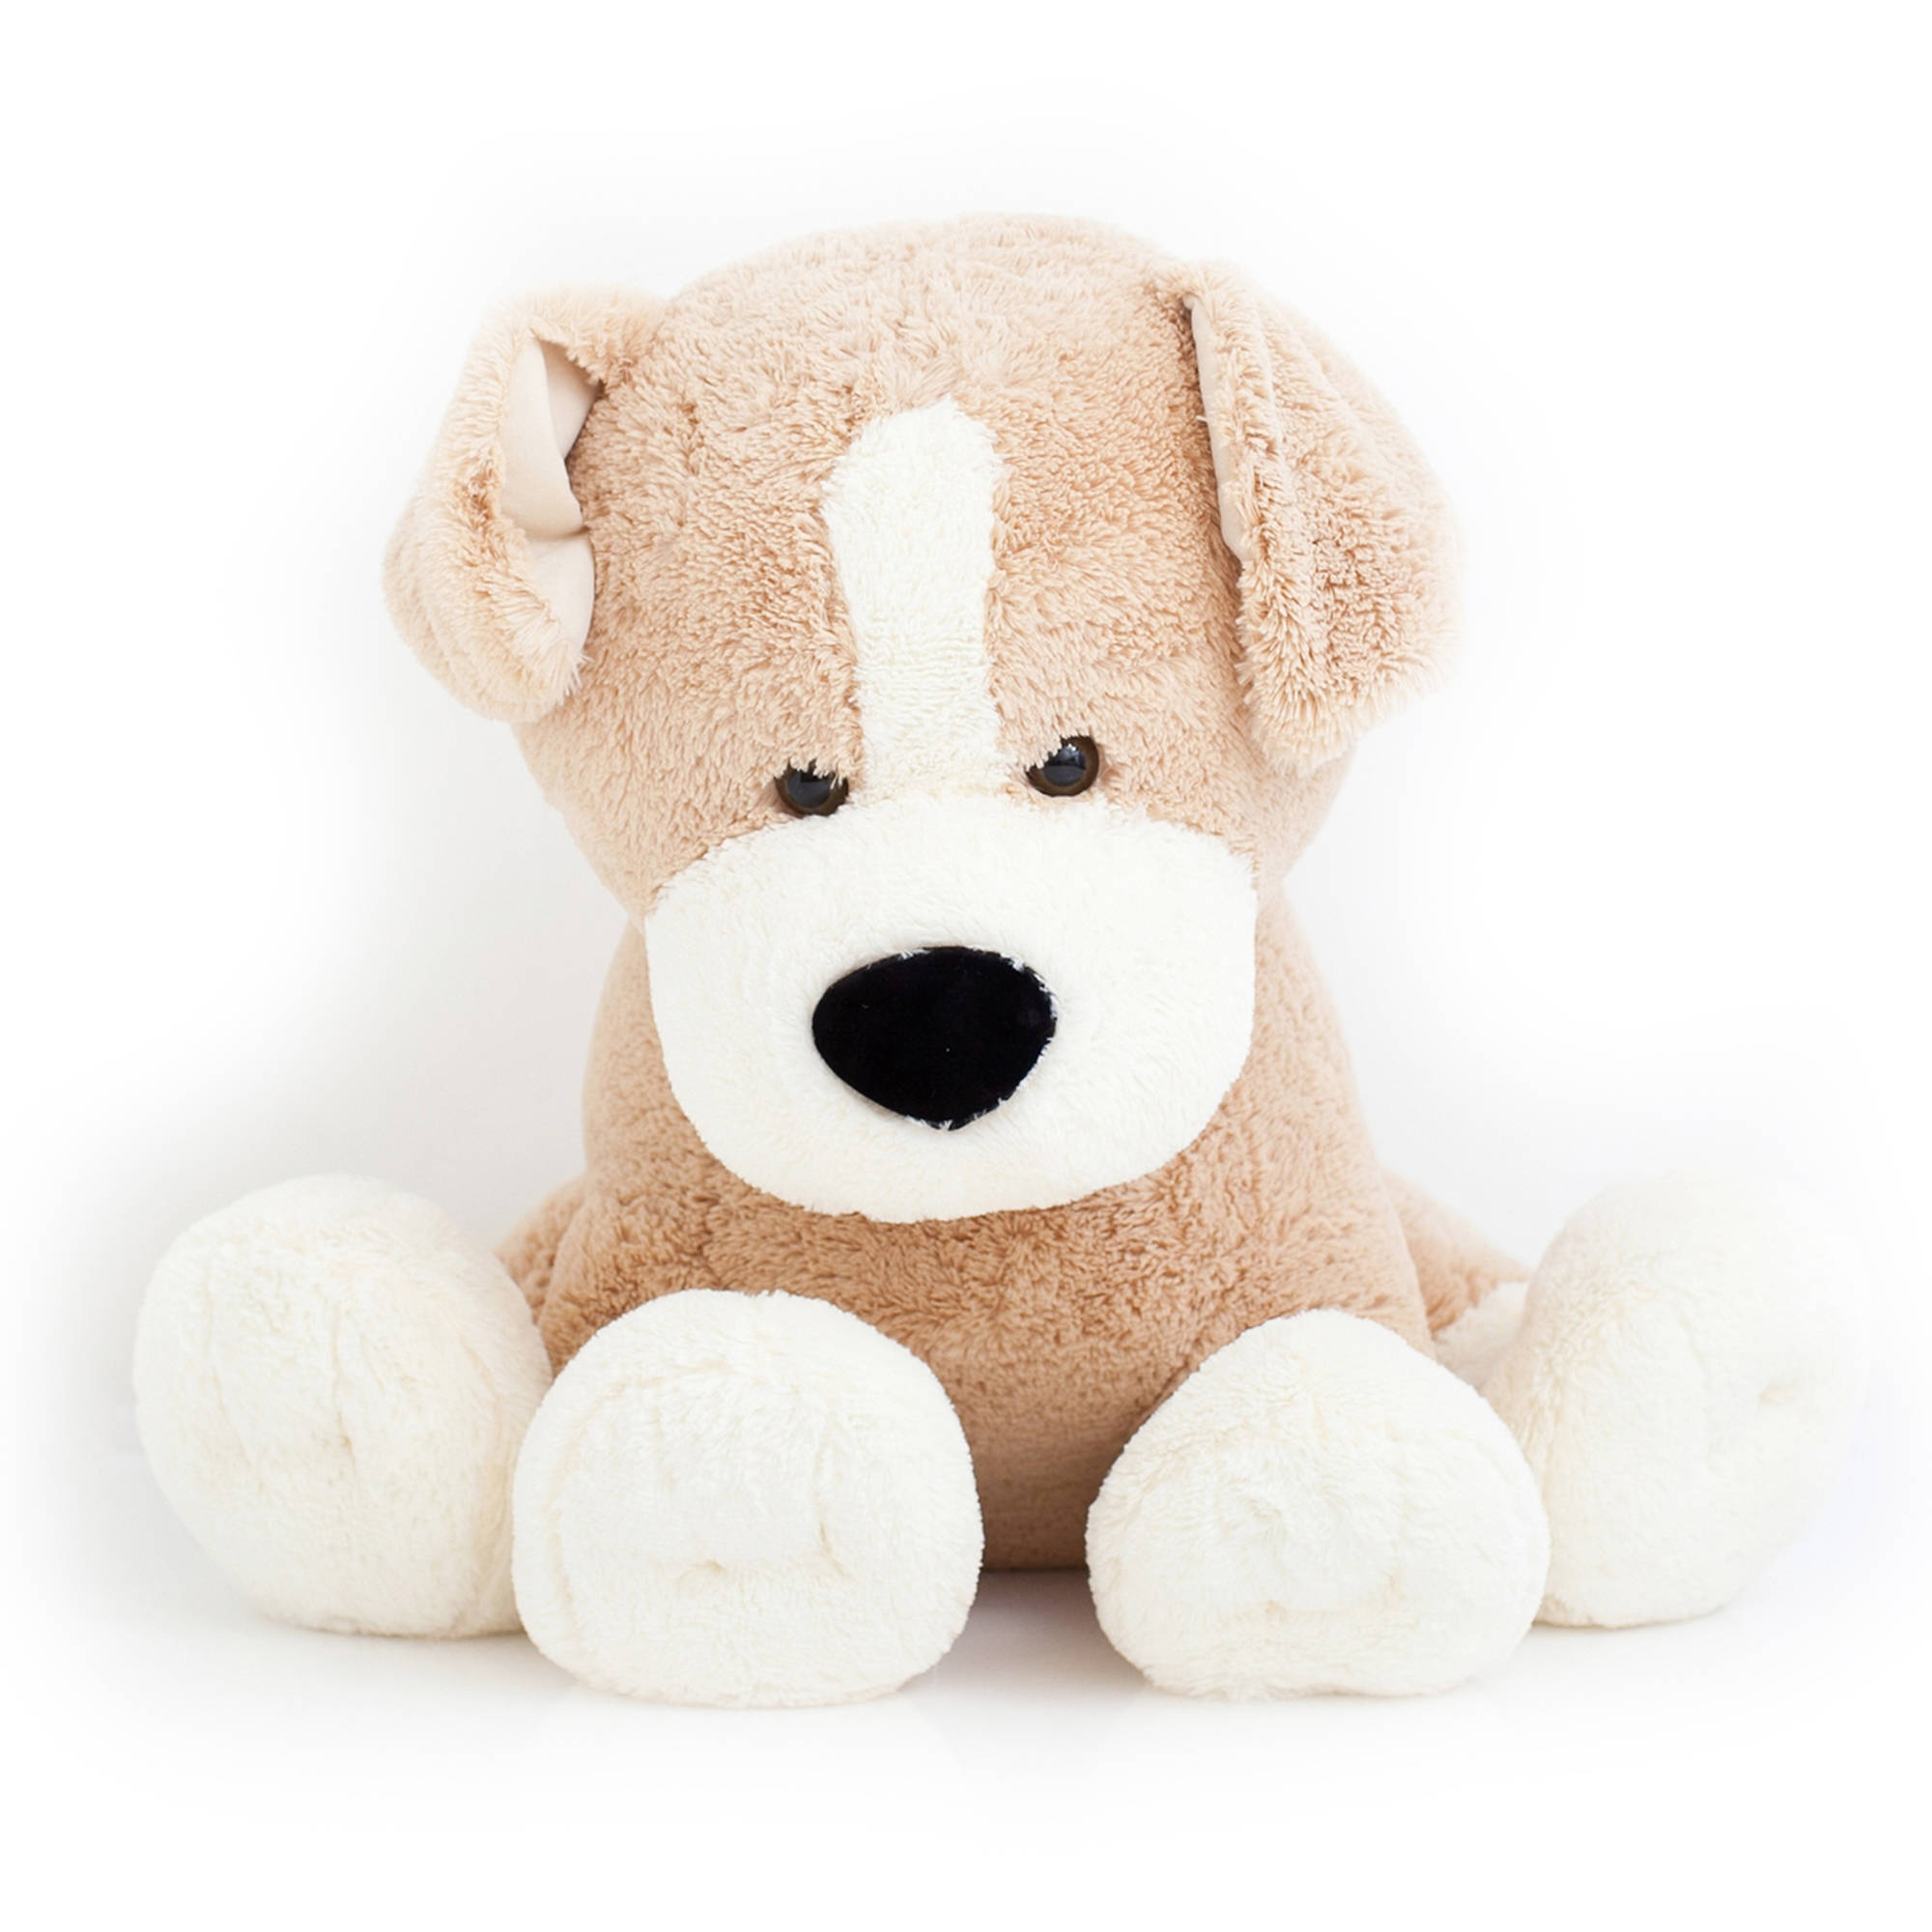 Best Made Toys Jumbo Sitting Dog - image 2 of 5